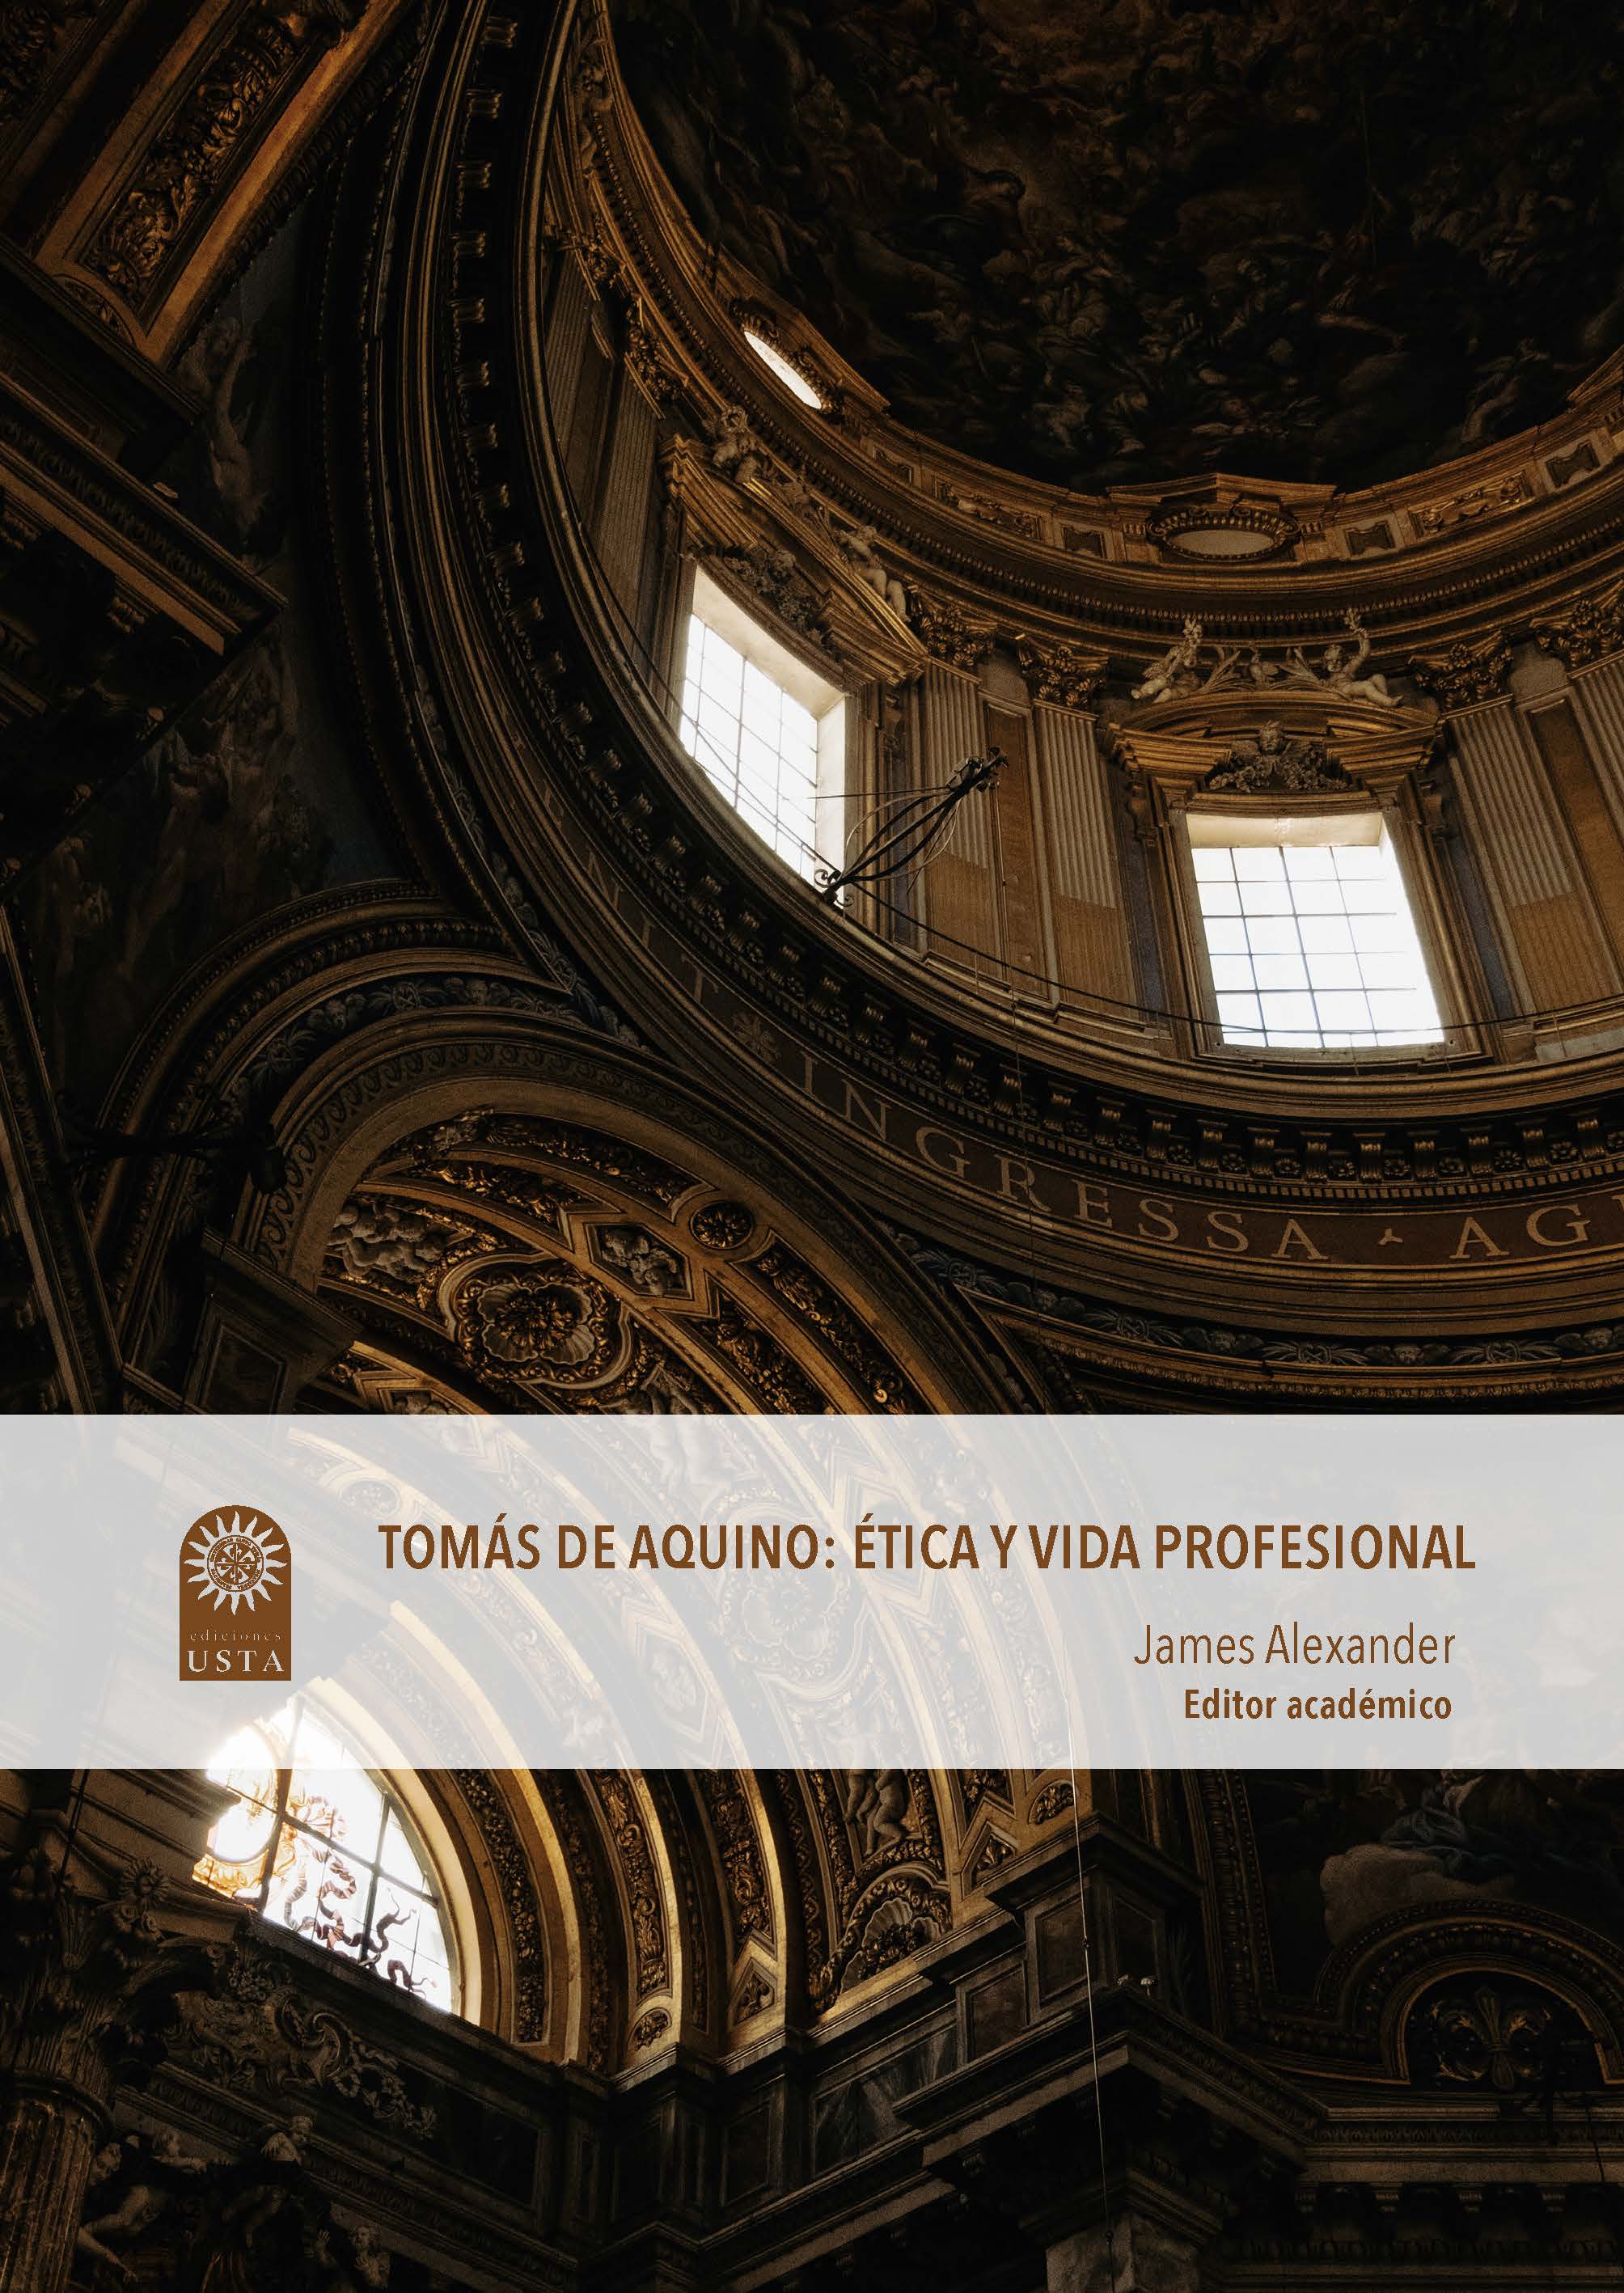 Tomas de Aquino: ética y vida profesional